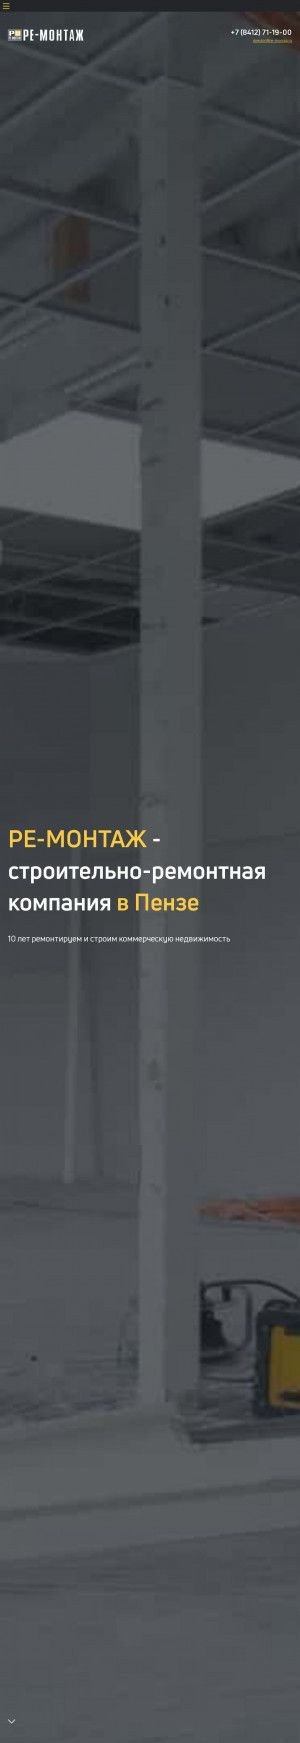 Предпросмотр для www.re-montag.ru — Ре-монтаж